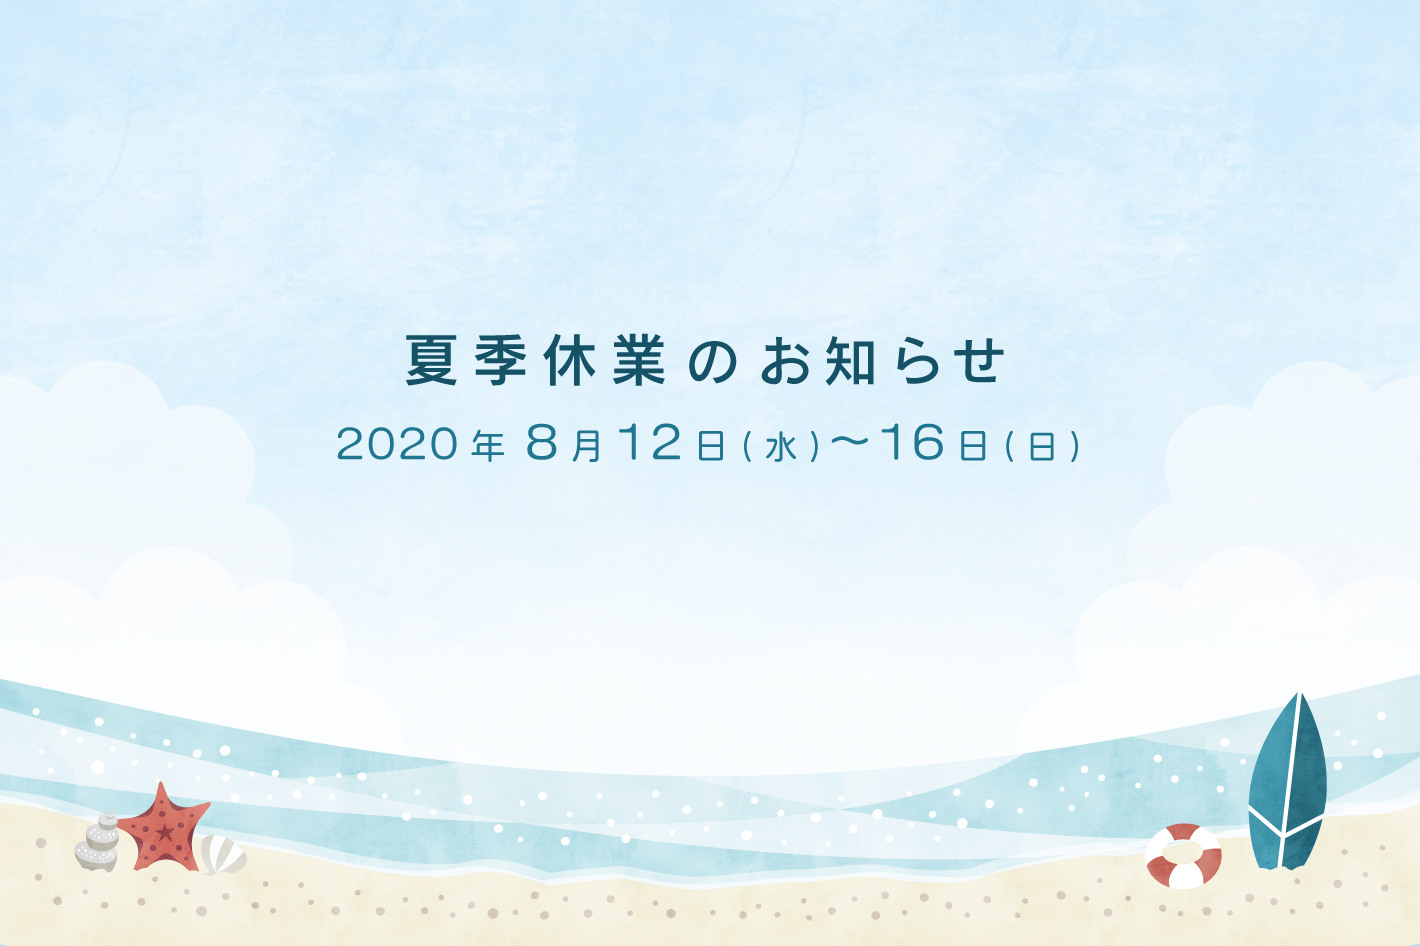 夏季休業のお知らせ 2020年8月12日（水） 〜 8月16日（日）